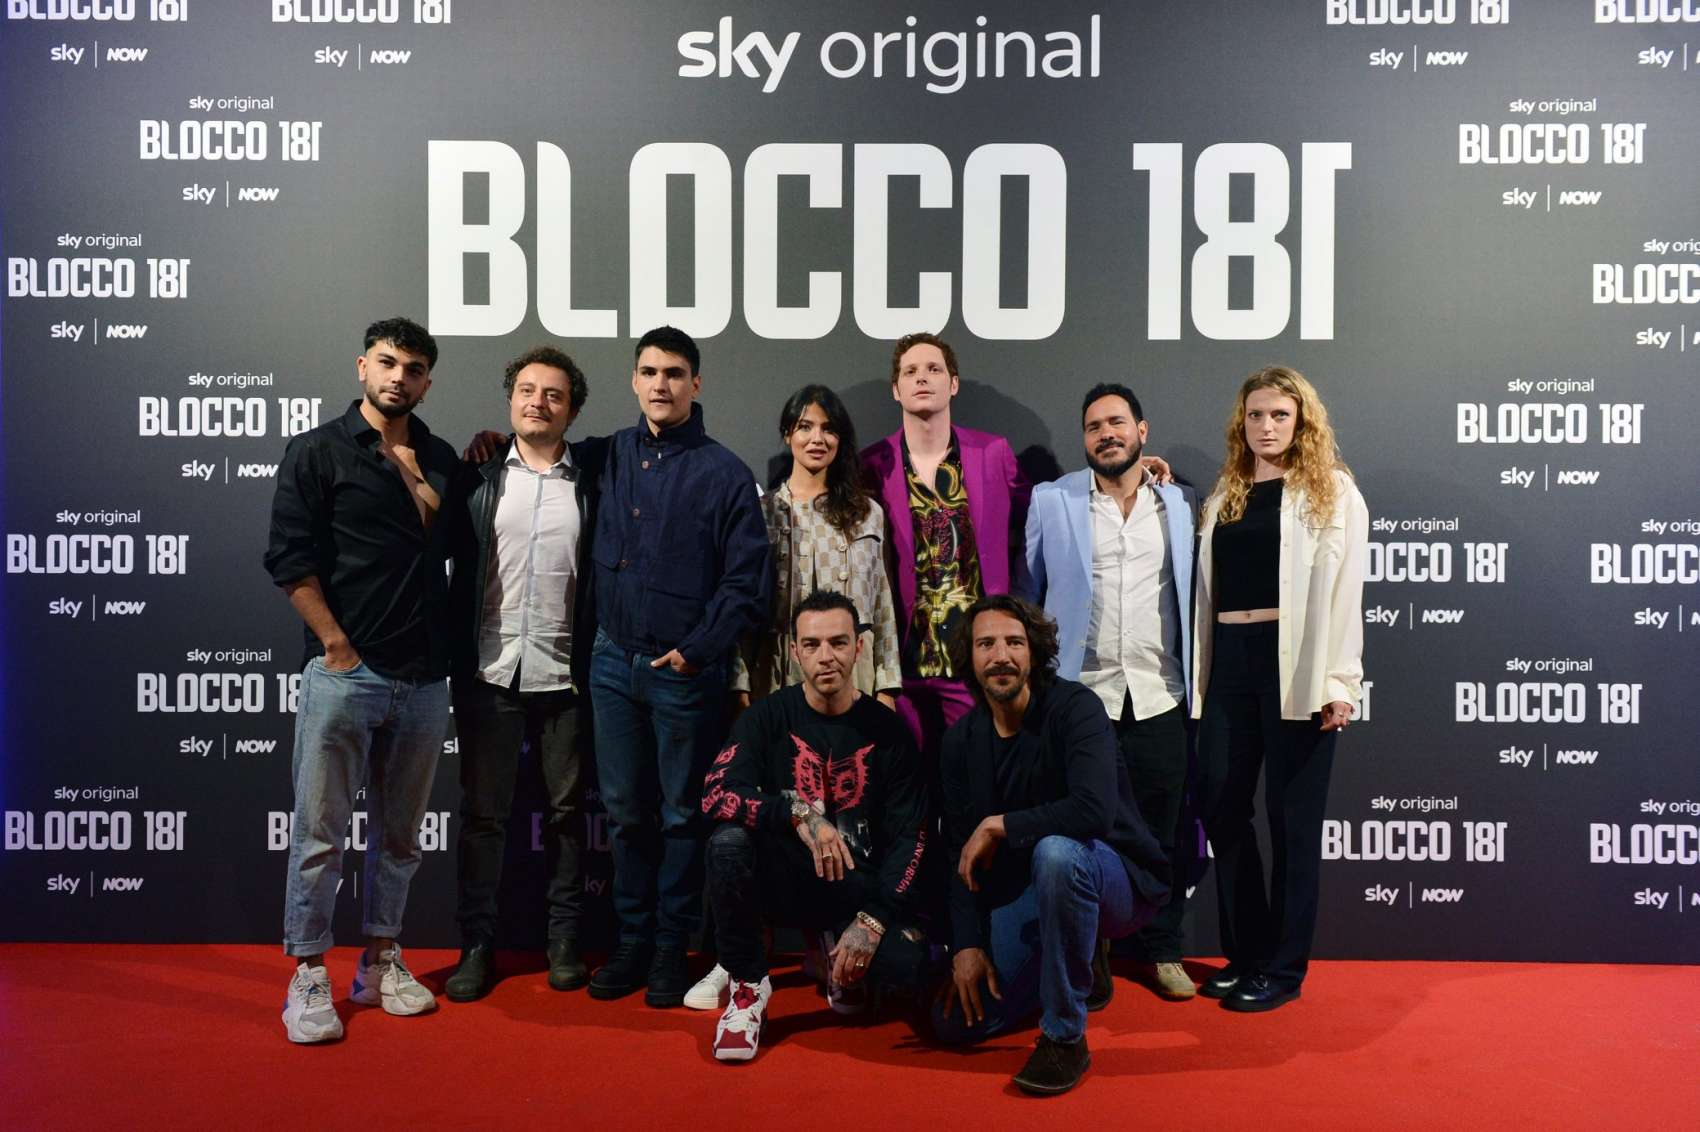 «Blocco 181», la nuova serie Sky Original. Amore e criminalità in una inedita Milano